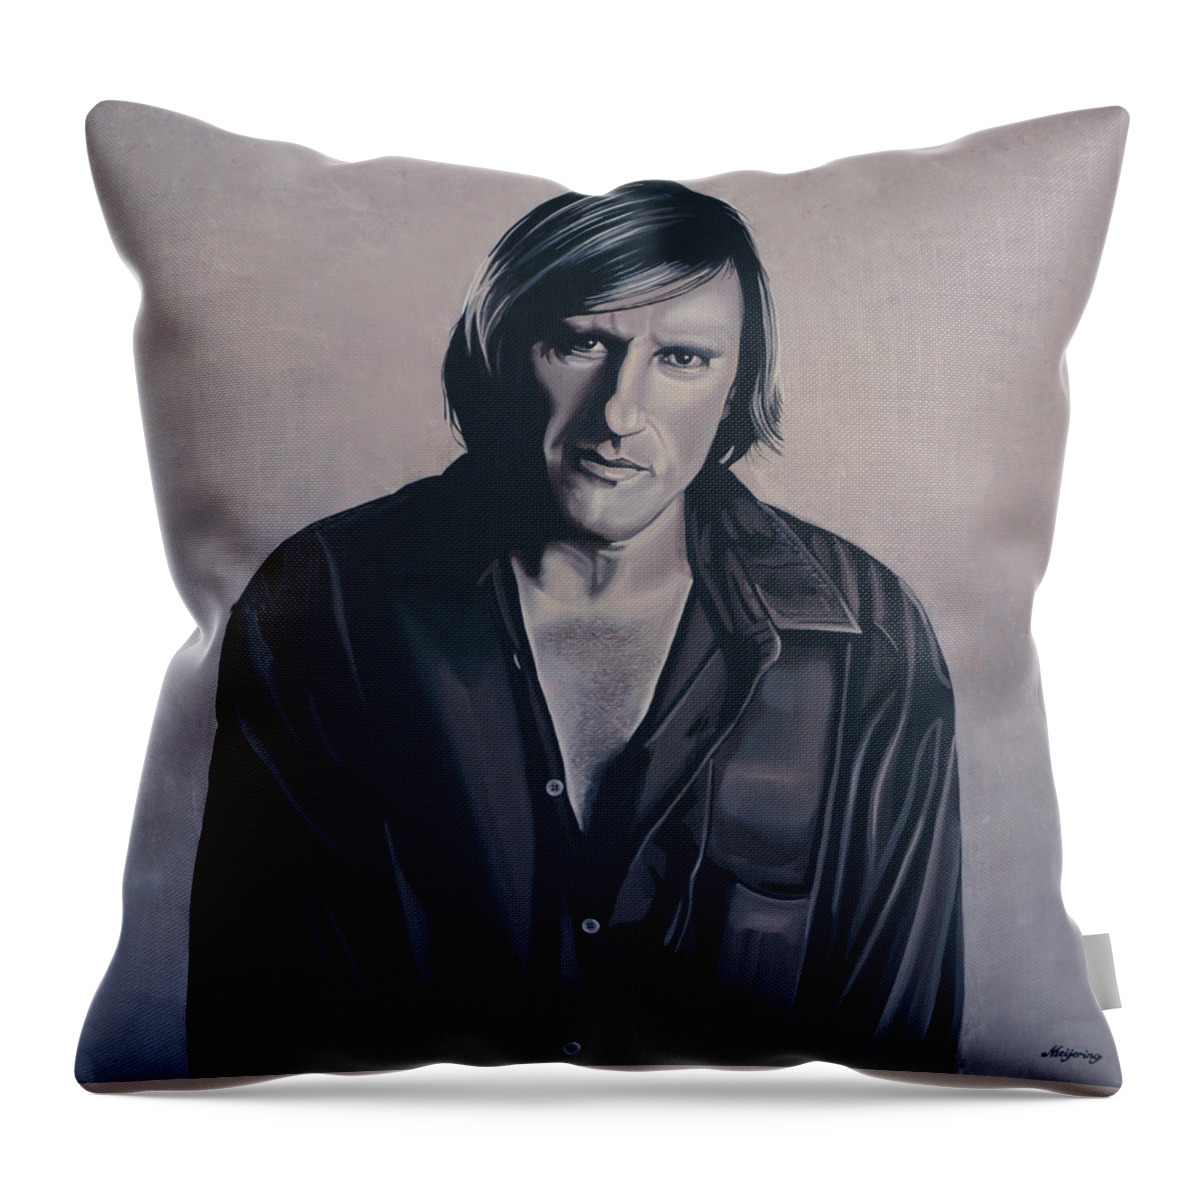 Gerard Depardieu Throw Pillow featuring the painting Gerard Depardieu Painting by Paul Meijering